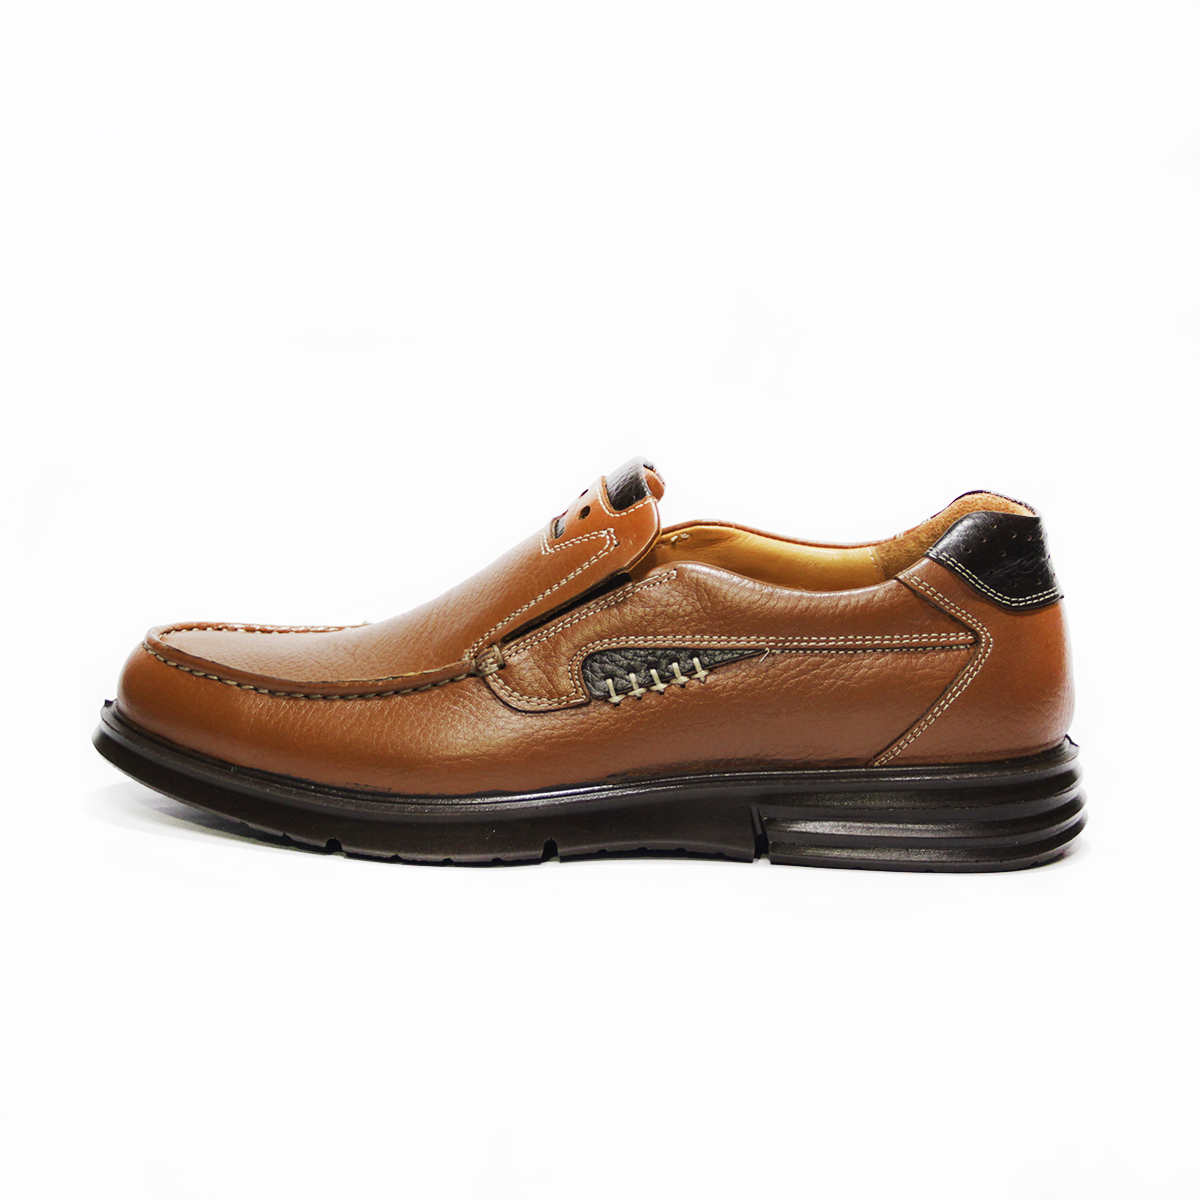 کفش روزمره مردانه فرزین کد PLKW 0012 رنگ گردویی